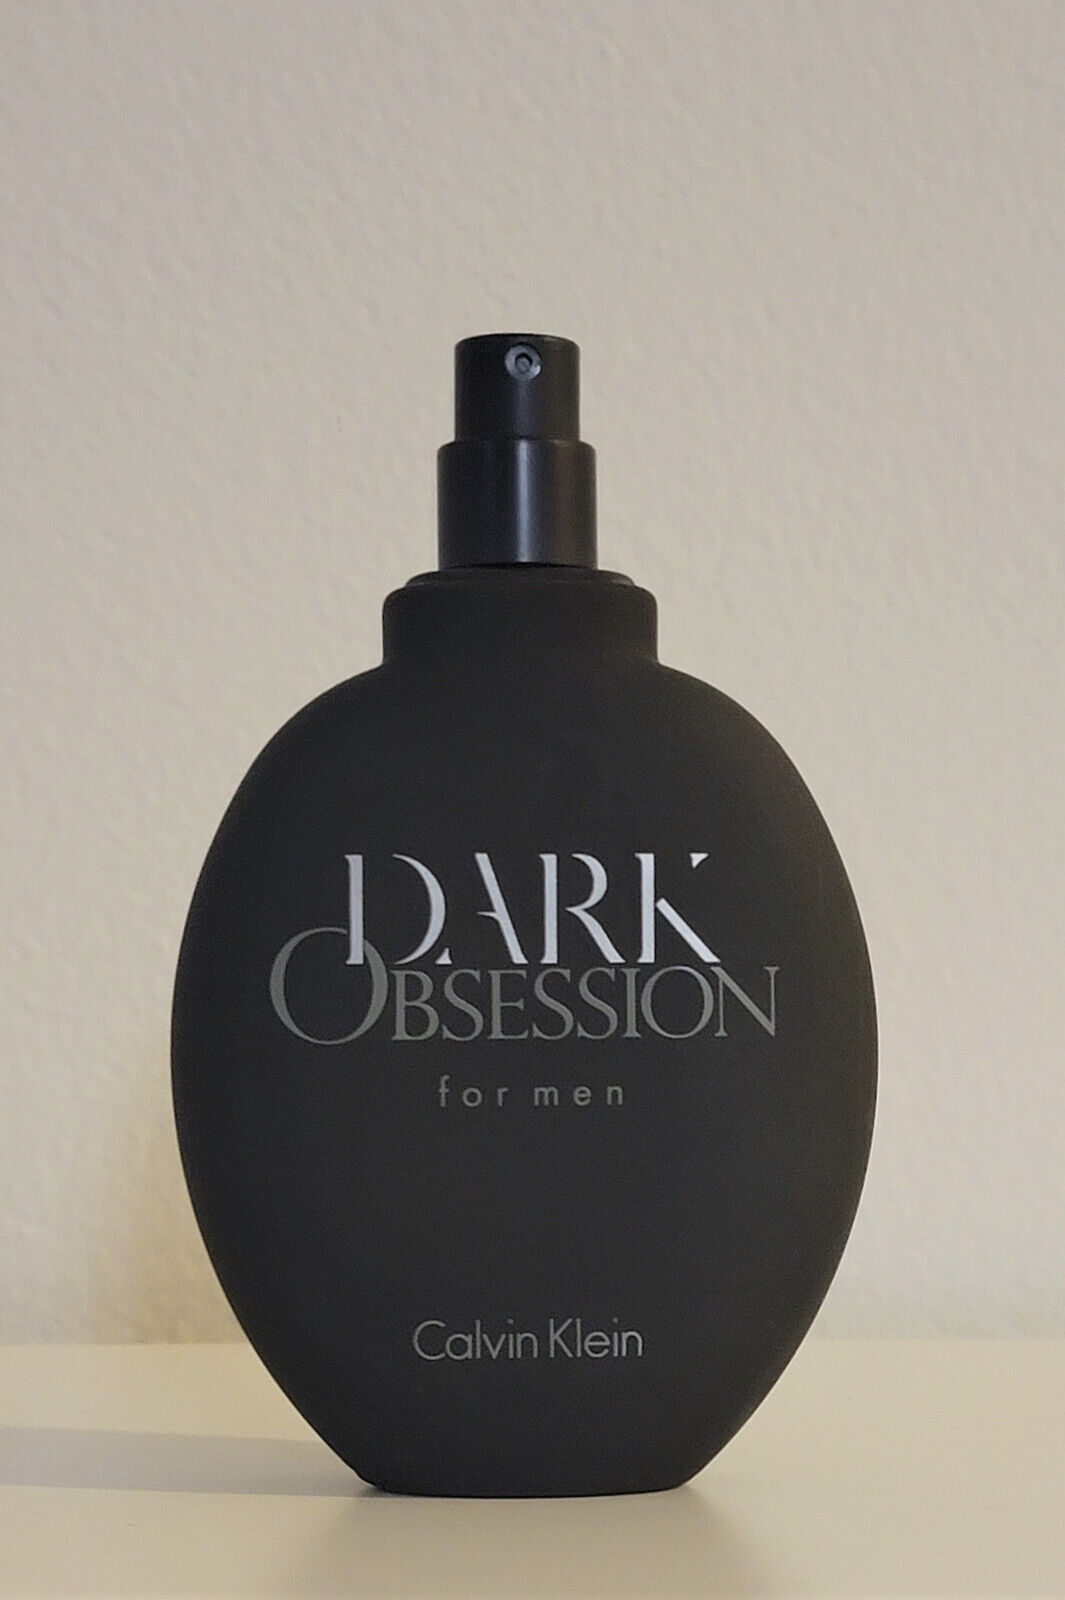 Dark Obsession by Calvin Klein 4. oz / 125 ml edt spy cologne for men homme